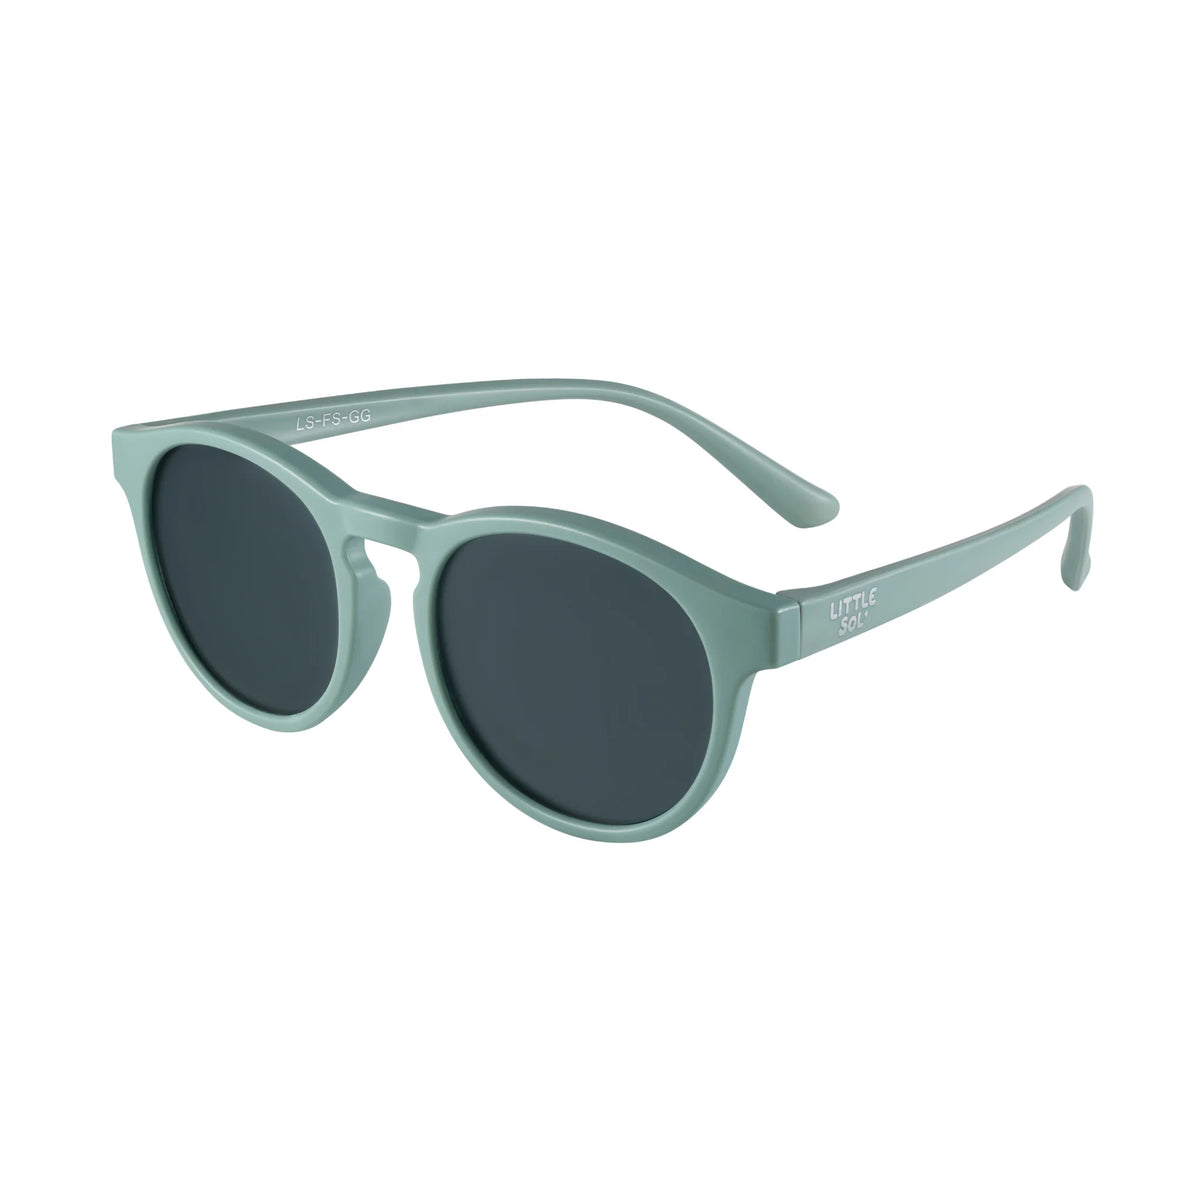 Little Sol+ Sydney - Granite Green Kids Sunglasses